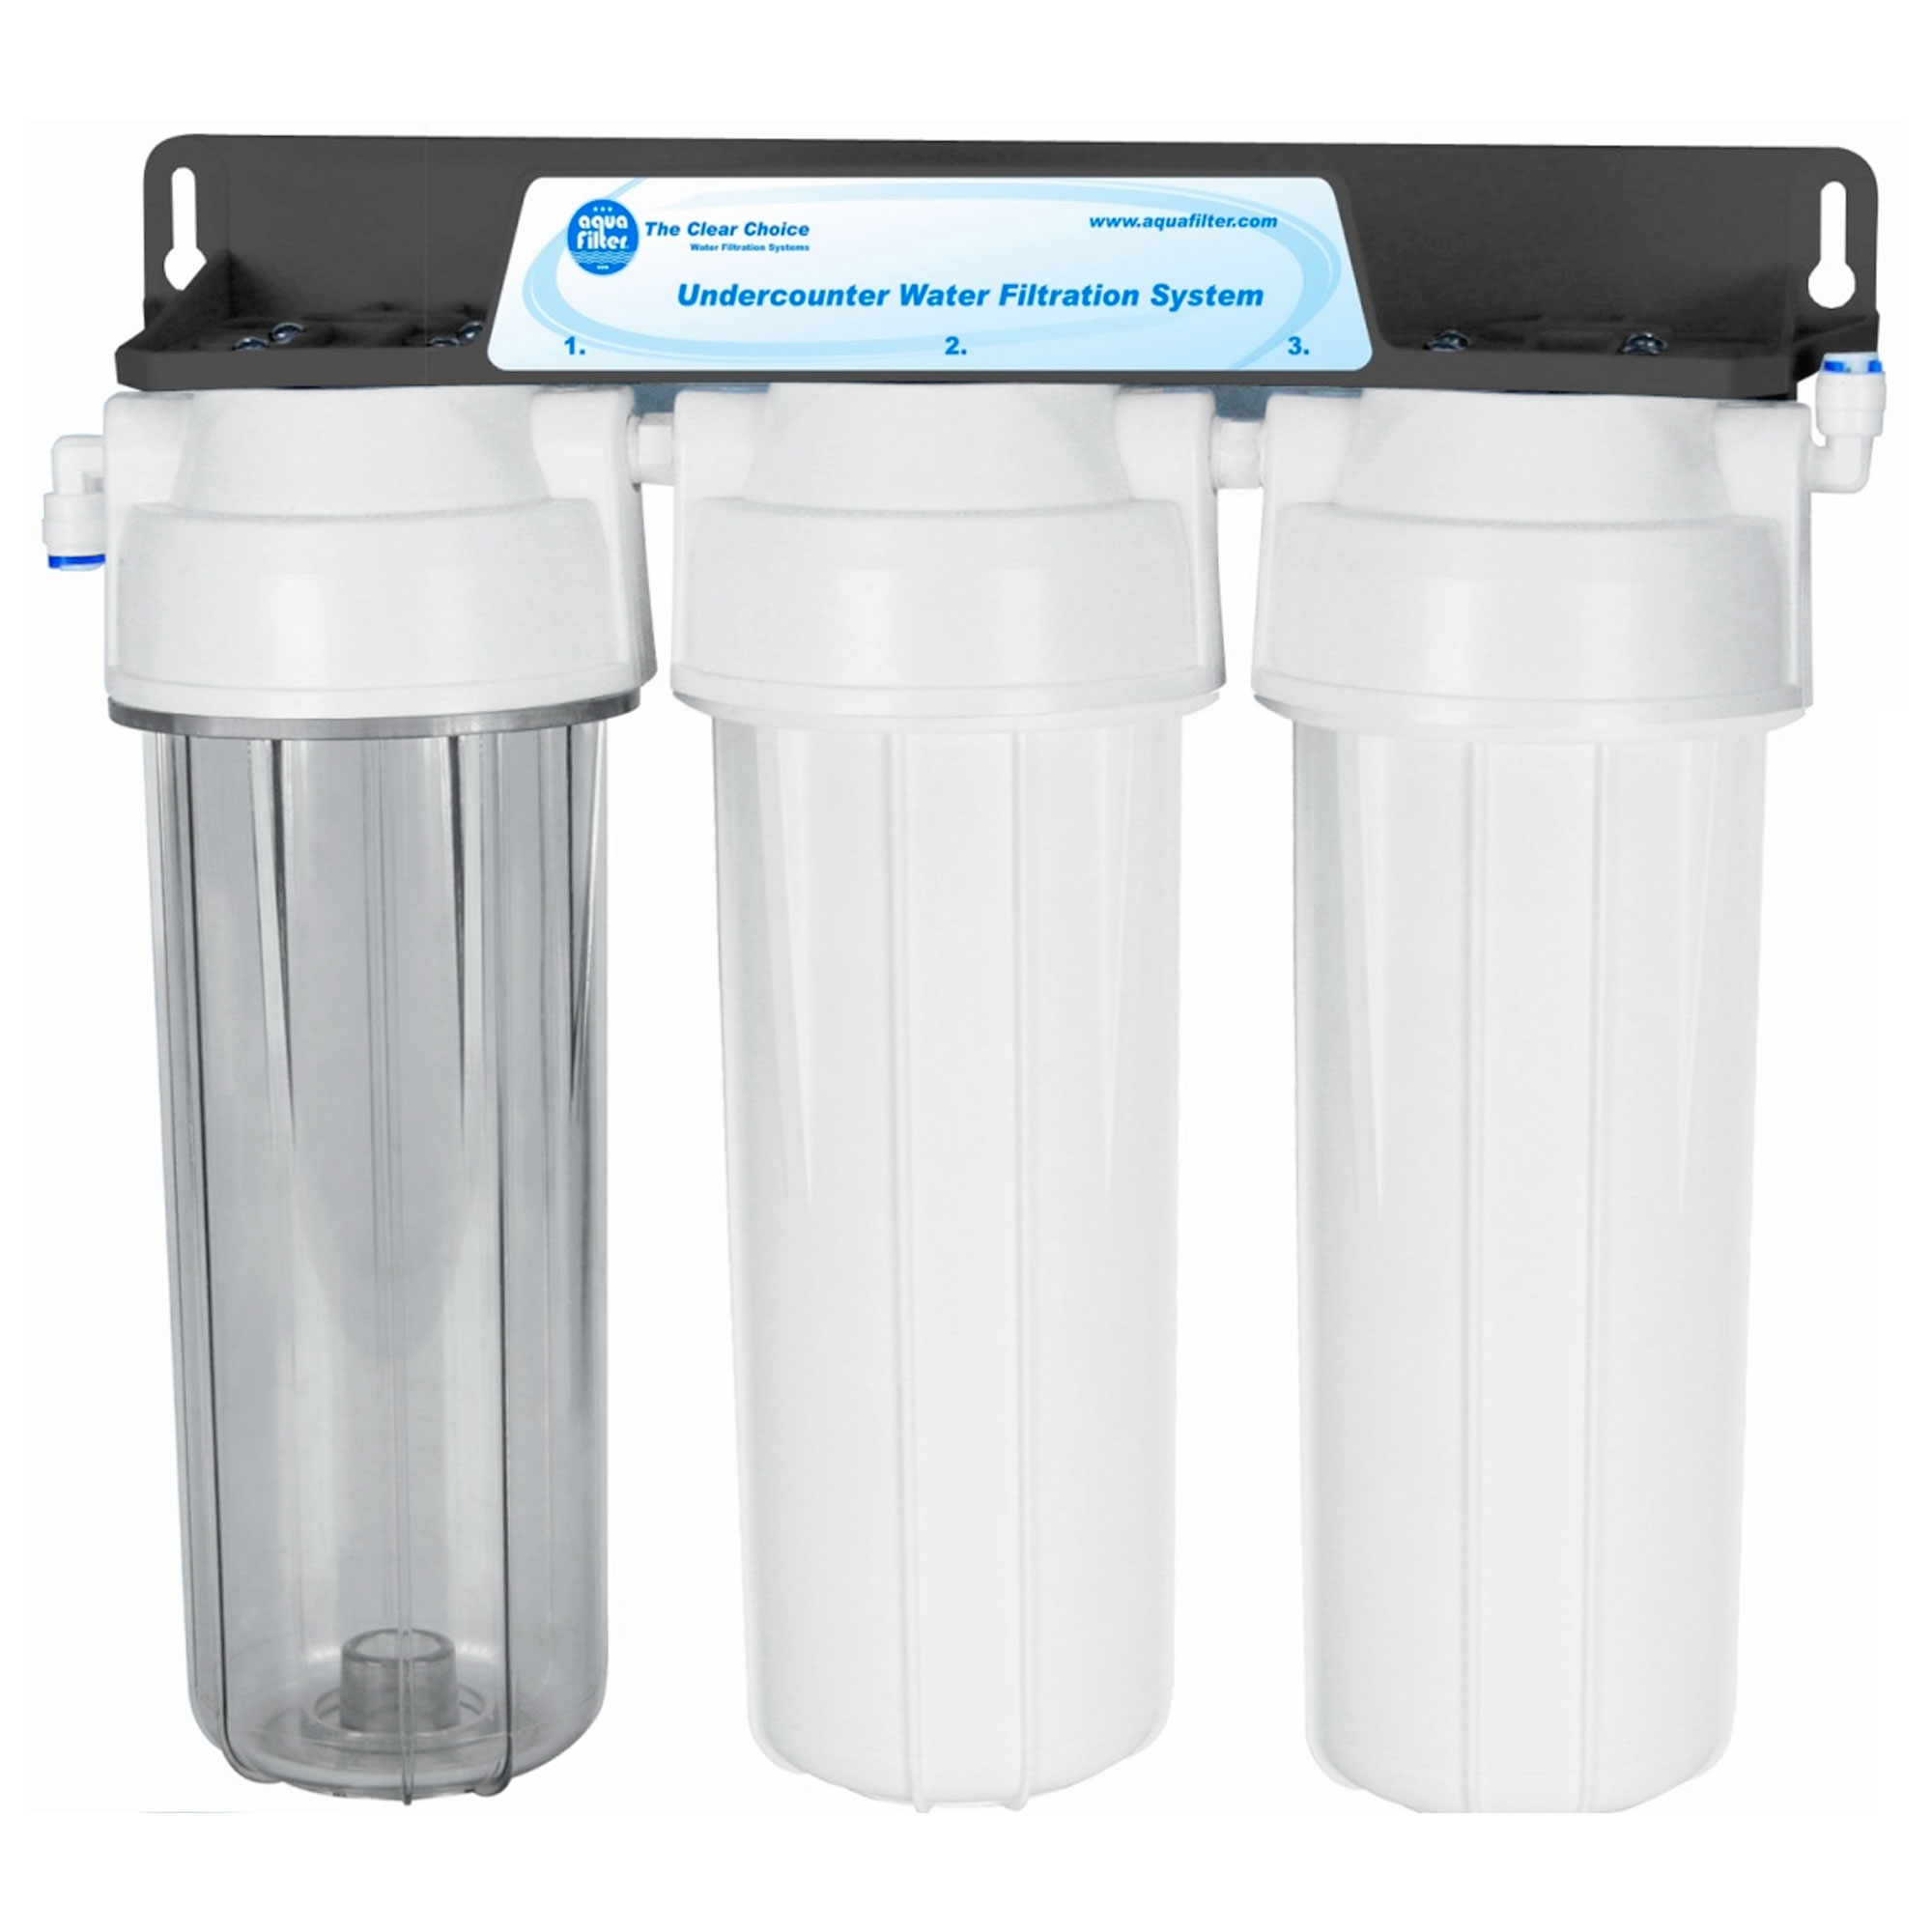 Фильтр для воды Aquafilter FP3 - 2 3-ступ. Фильтр под мойку, с 10'' картриджами цена 1324.00 грн - фотография 2